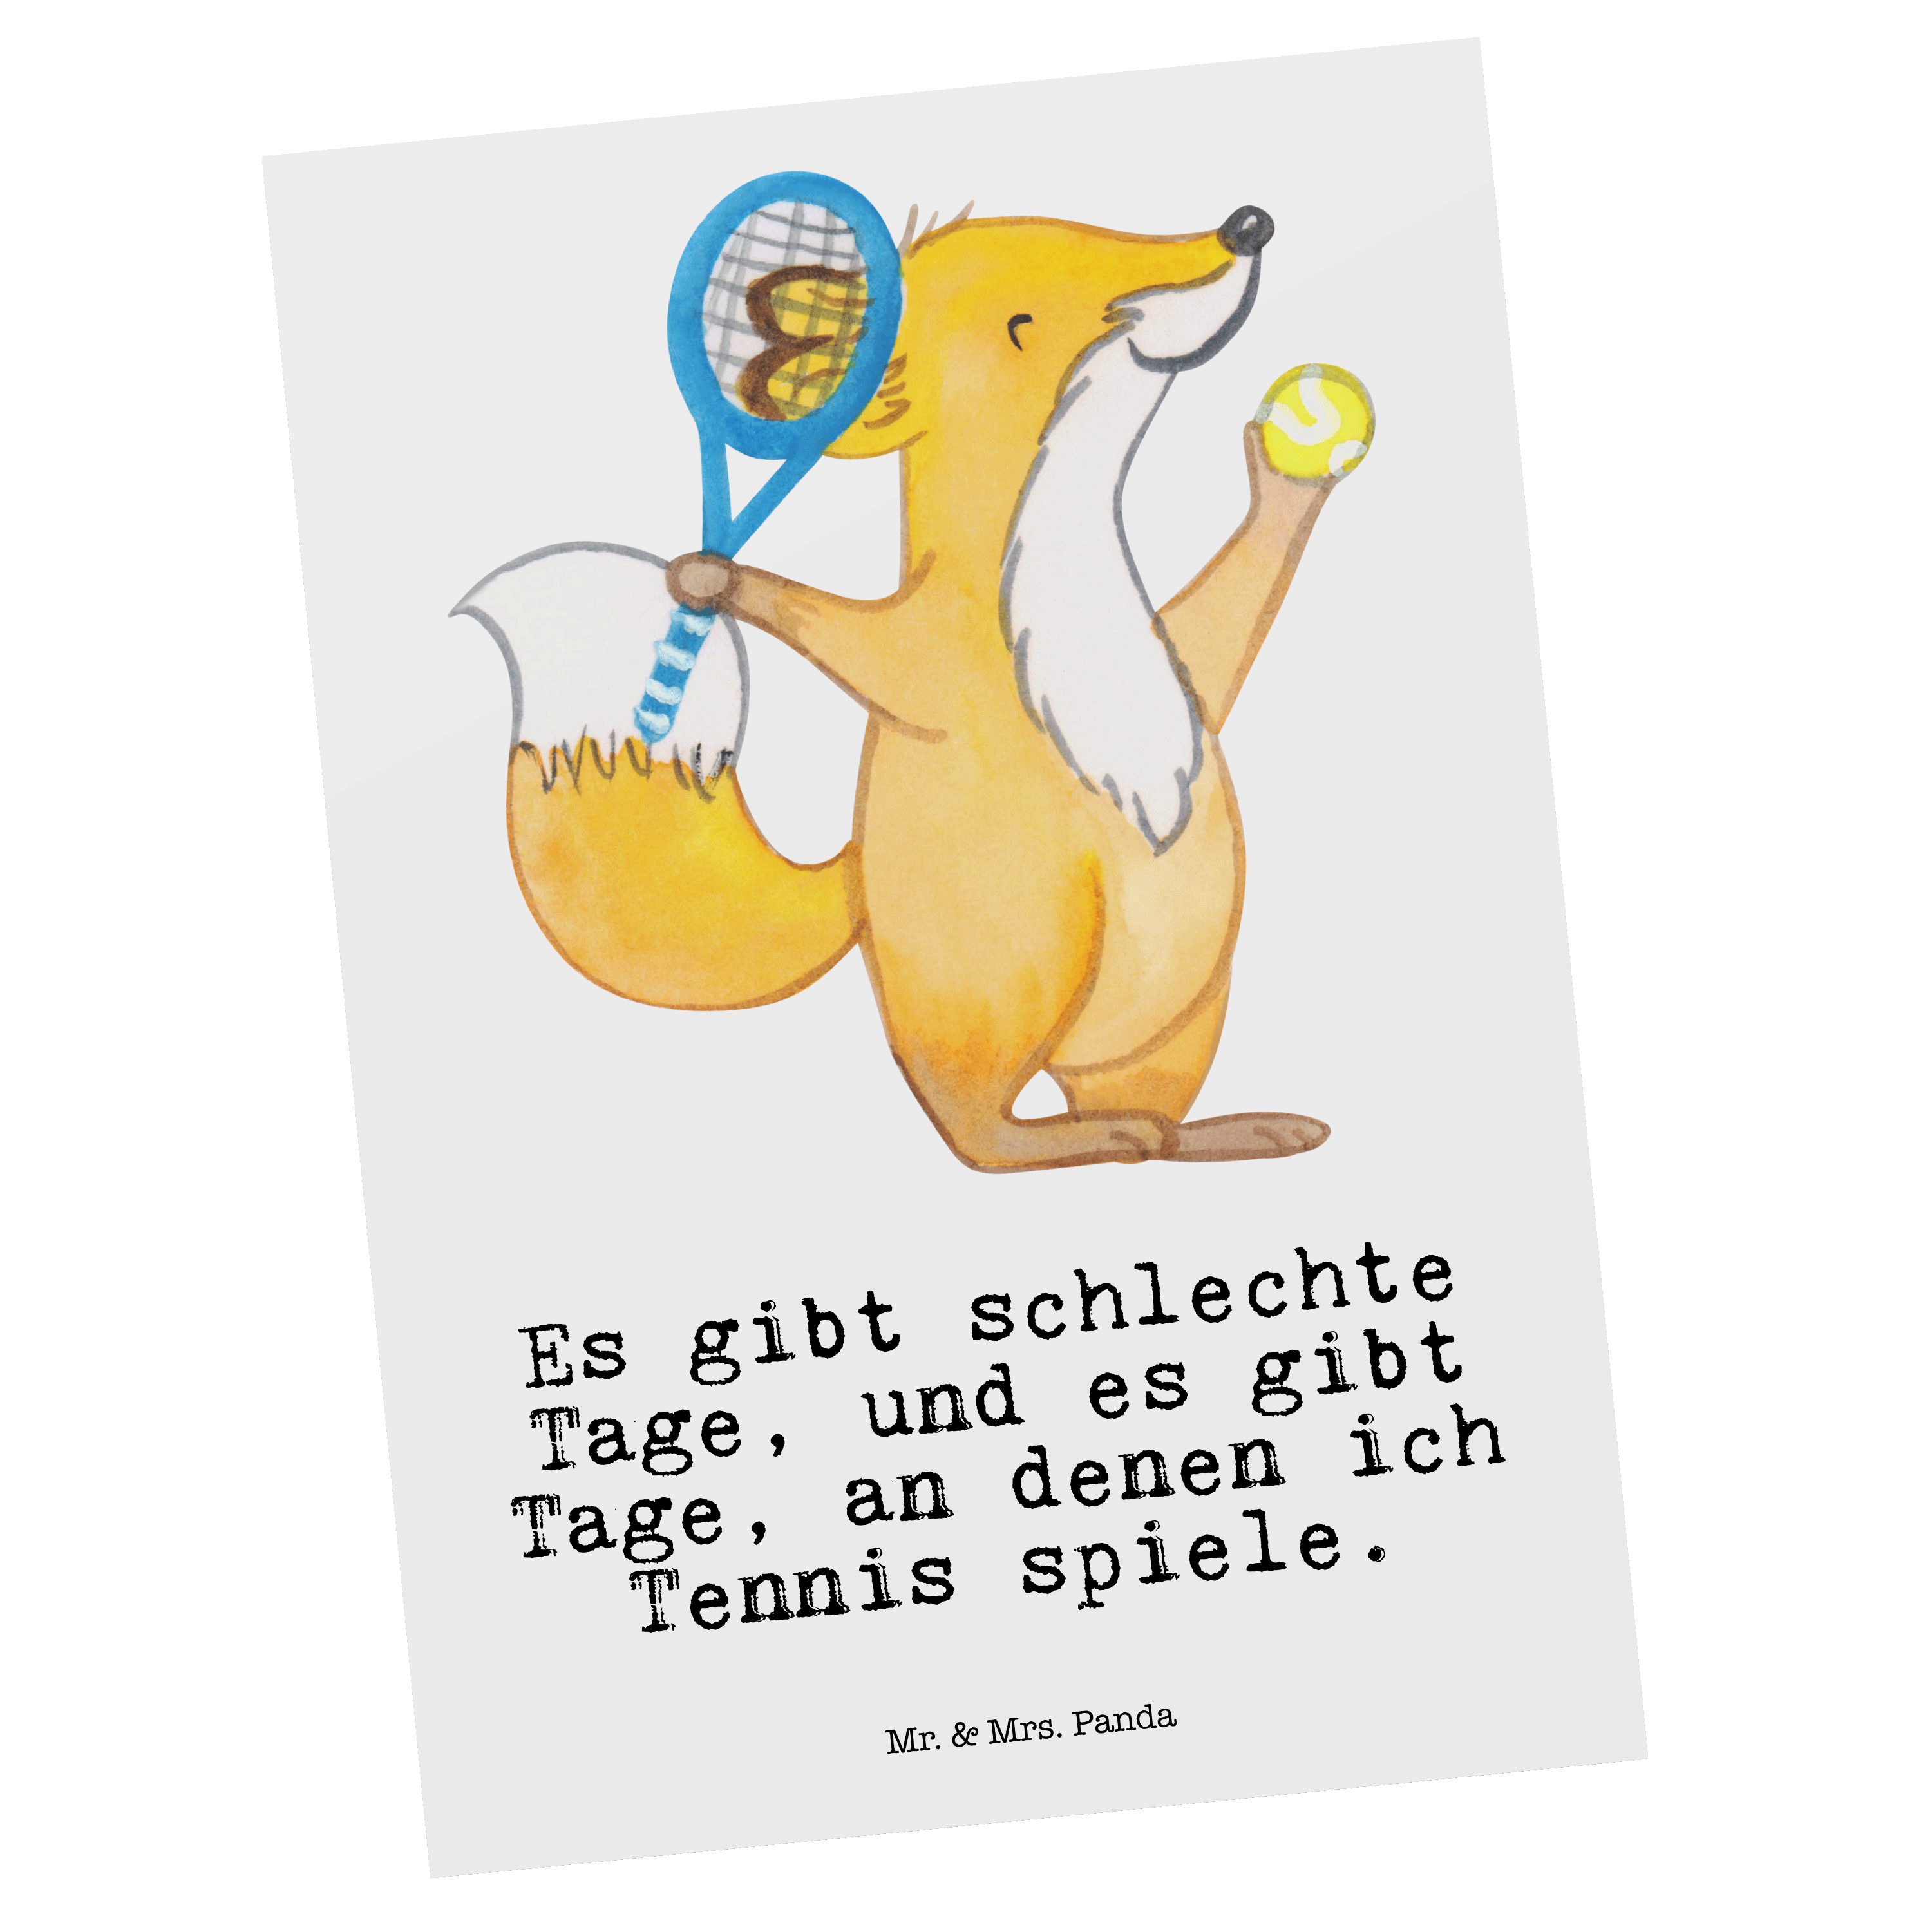 Mr. & Mrs. Weiß - Tennis spielen - Fuchs Schenken, Panda Geschenk, Postkarte Ansichtskarte Tage